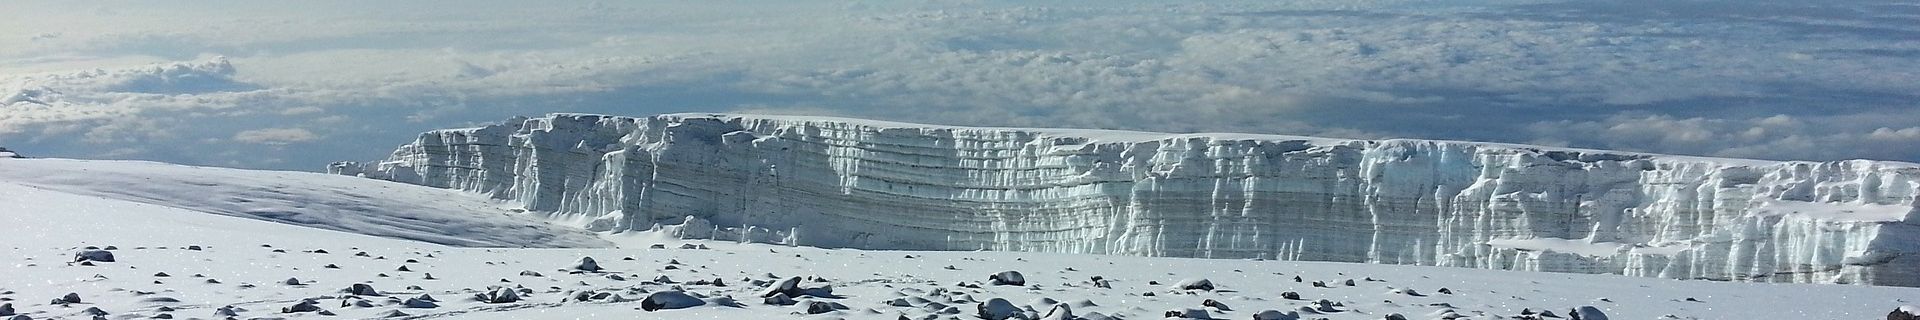 Klilimandscharo Besteigung Gletscher